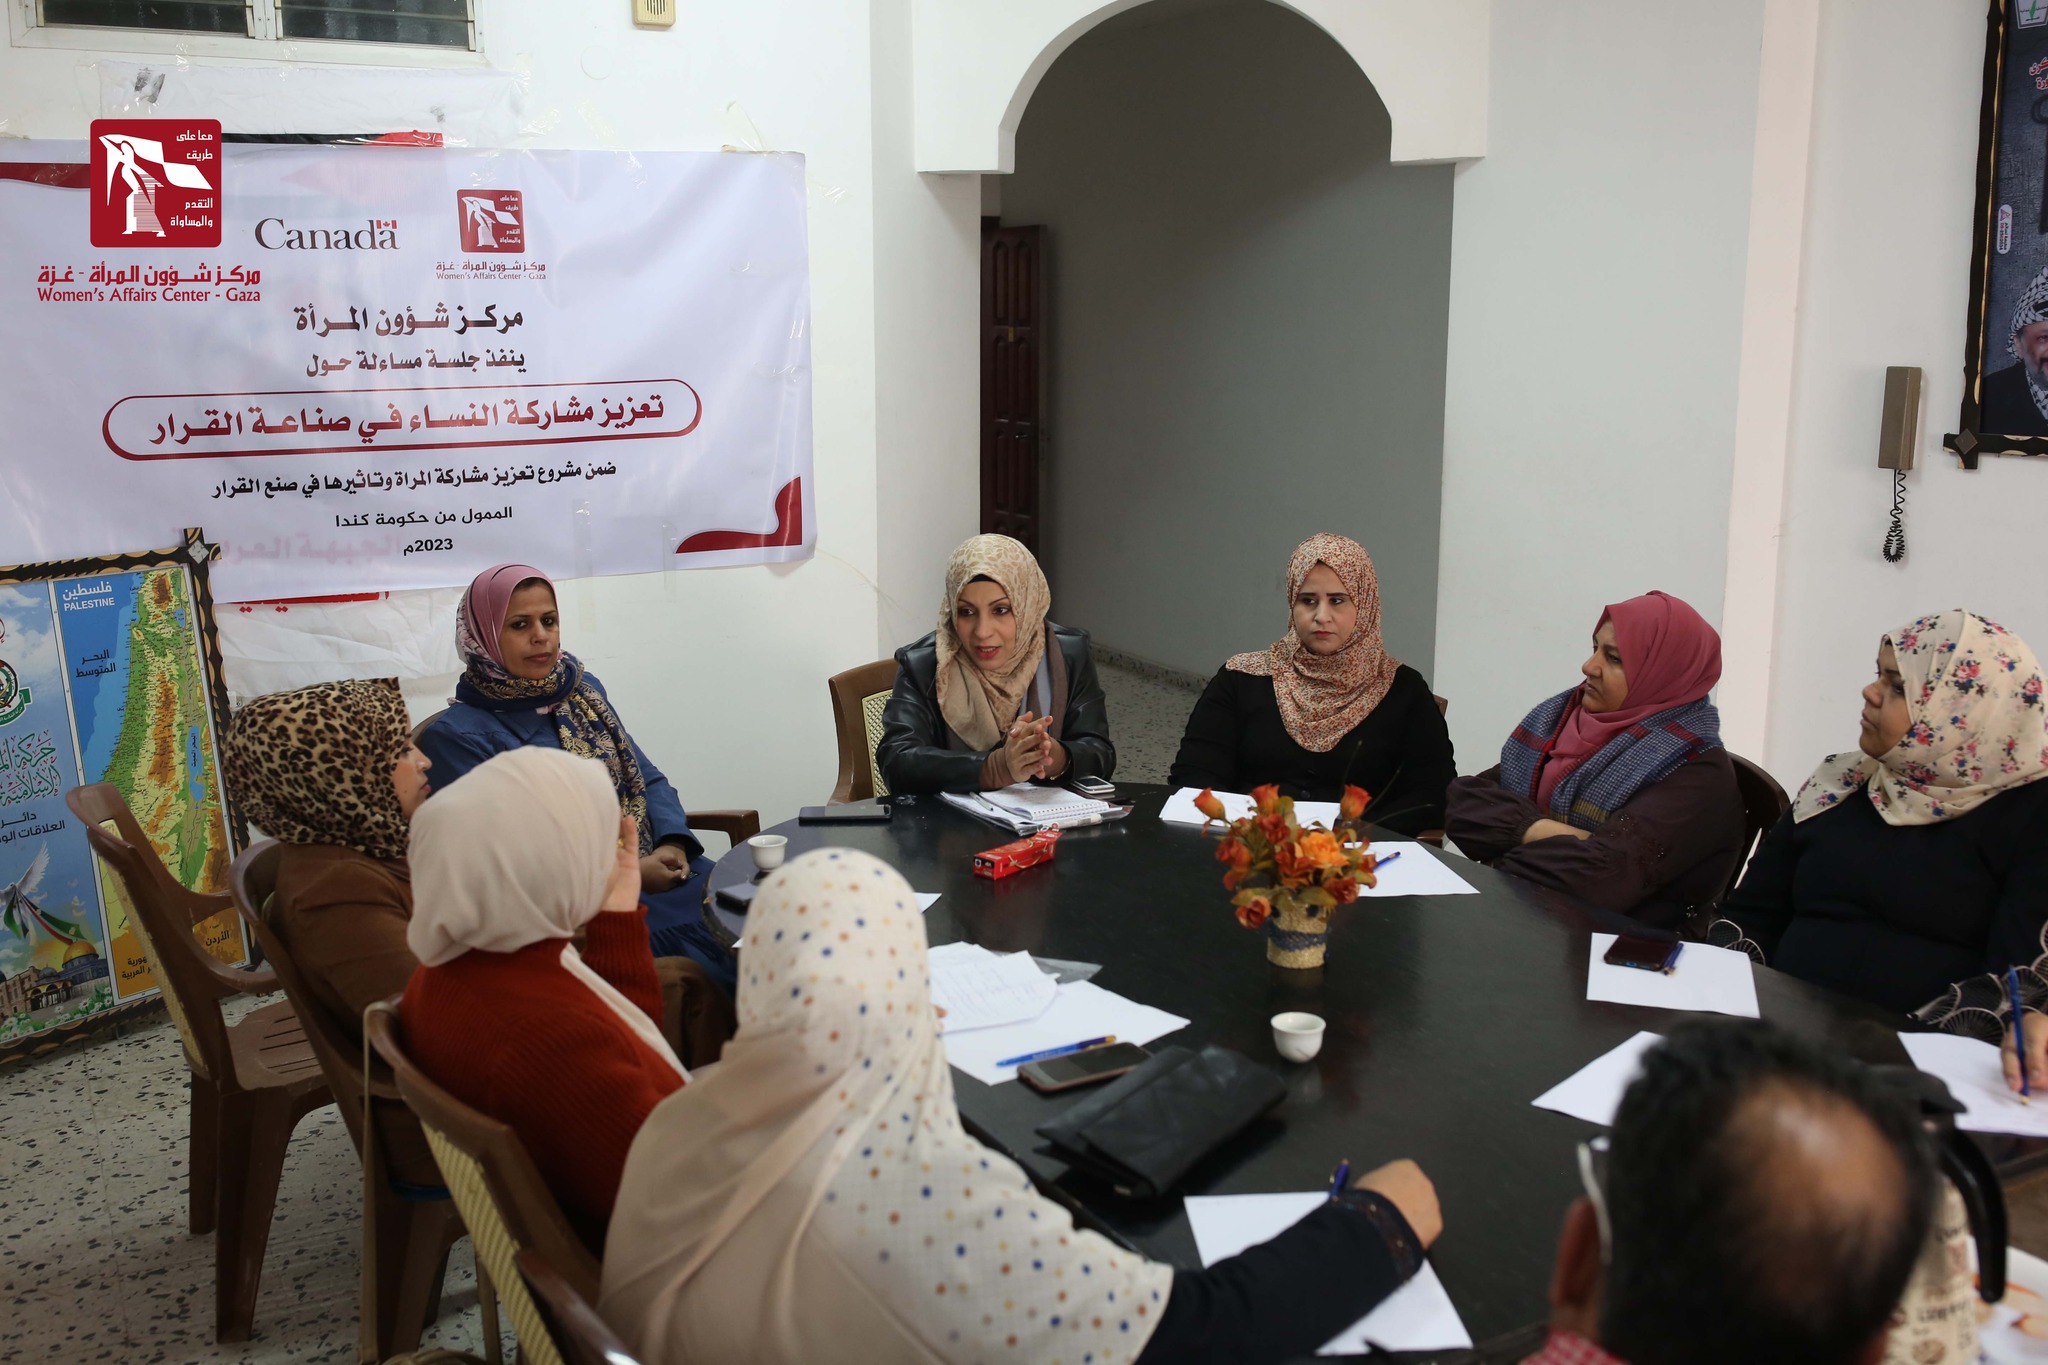 حول "المشاركة السياسية وتأثيرها في صنع القرار" مركز شؤون المرأة يختتم عشر جلسات مساءلة مجتمعية